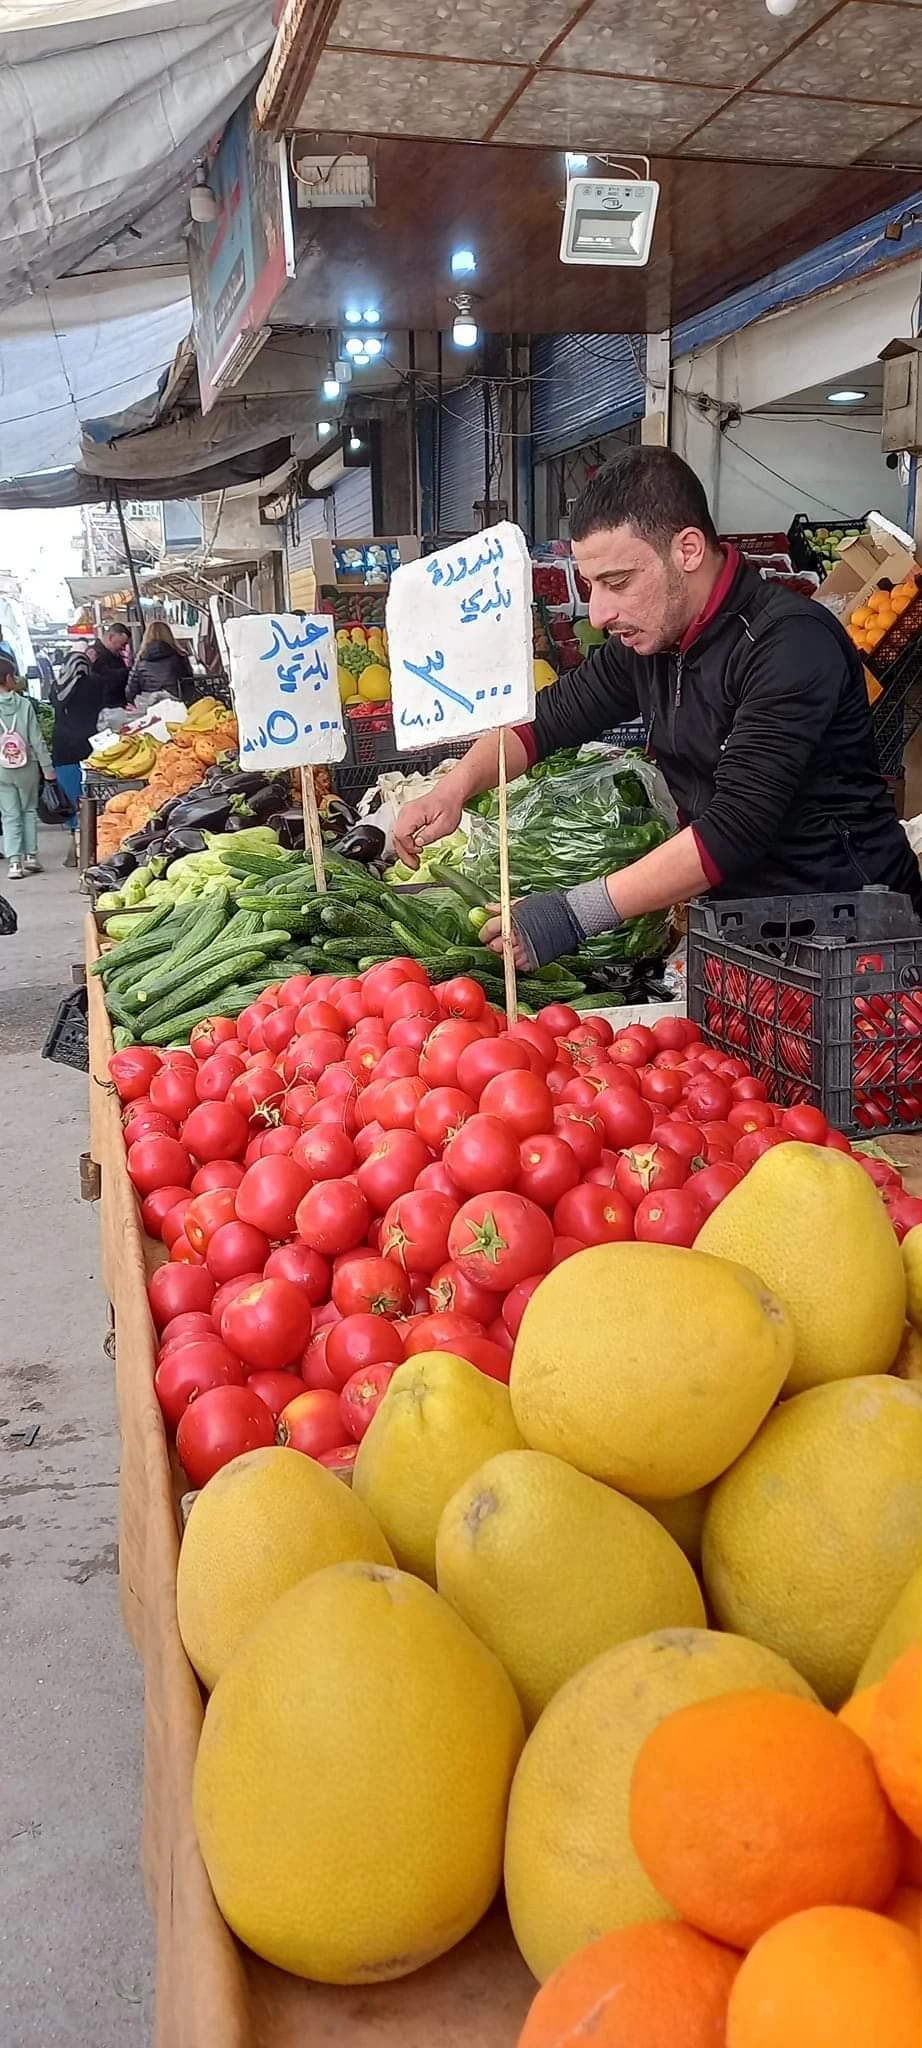 أسعار الخضار والفواكه في سوريا